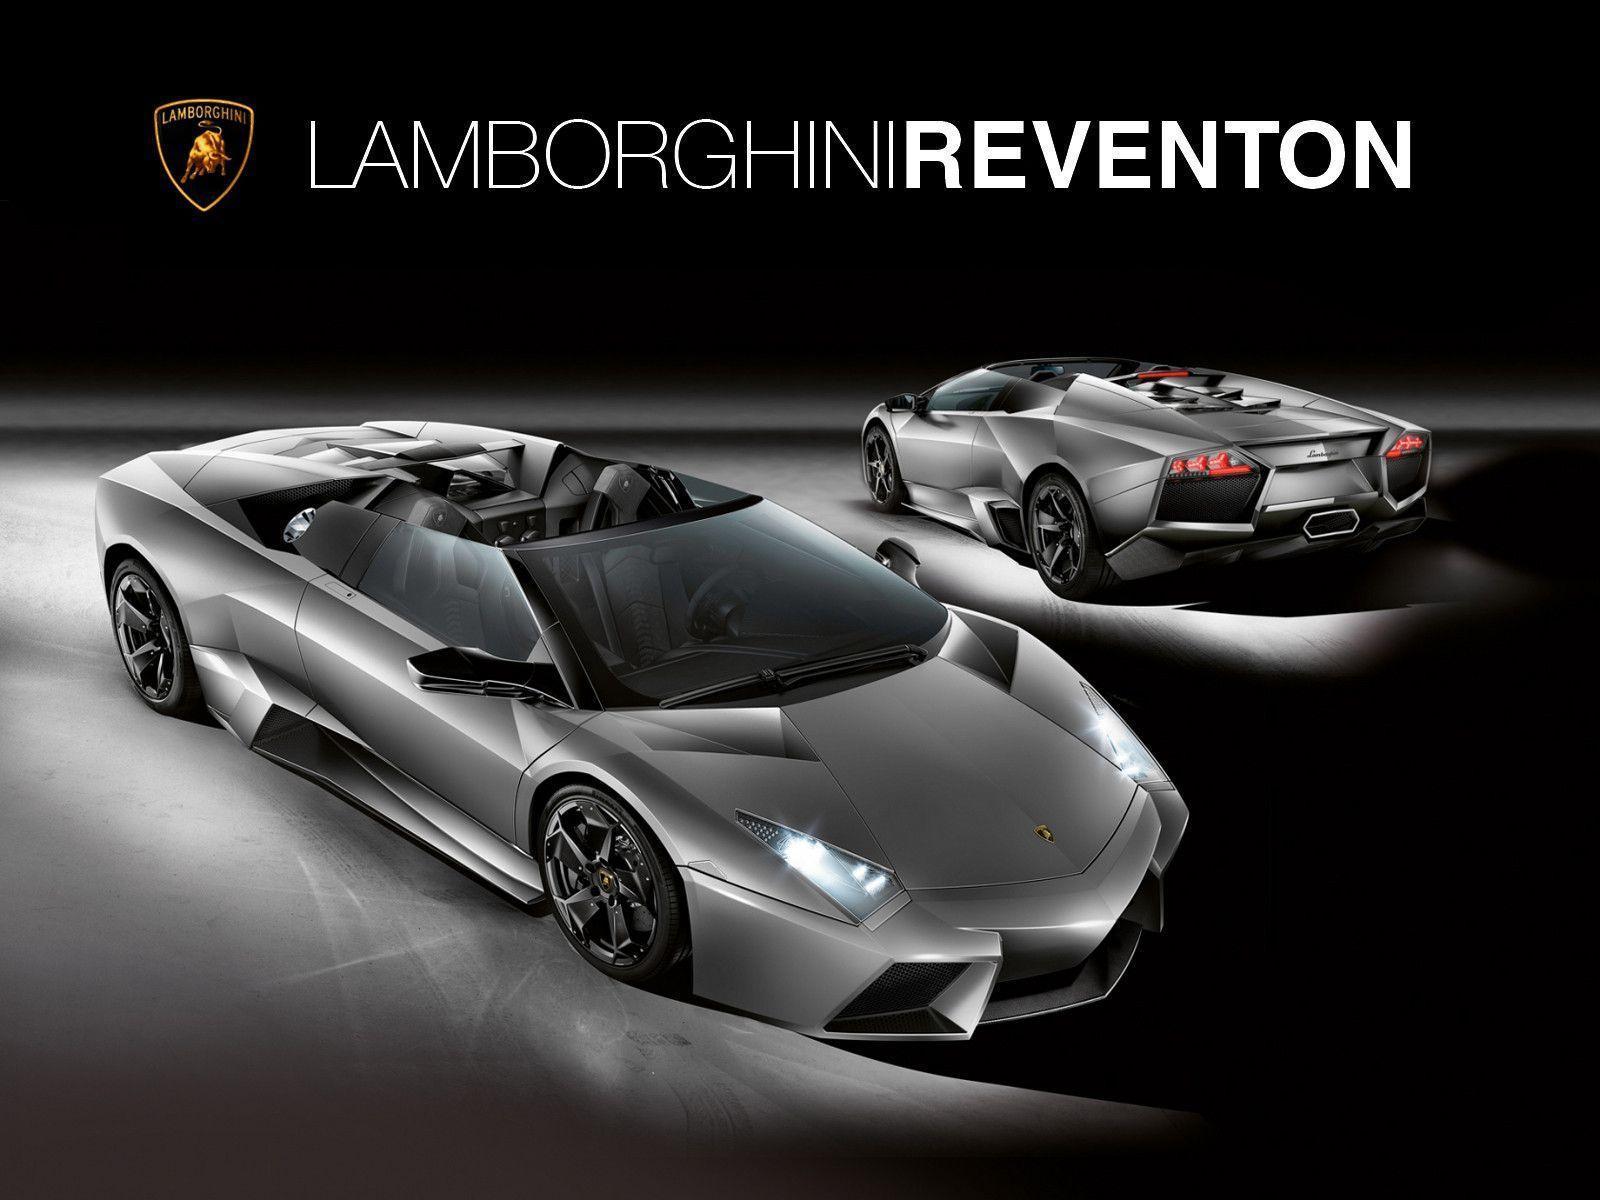 Lamborghini Reventon Picture 5 HD Wallpaper